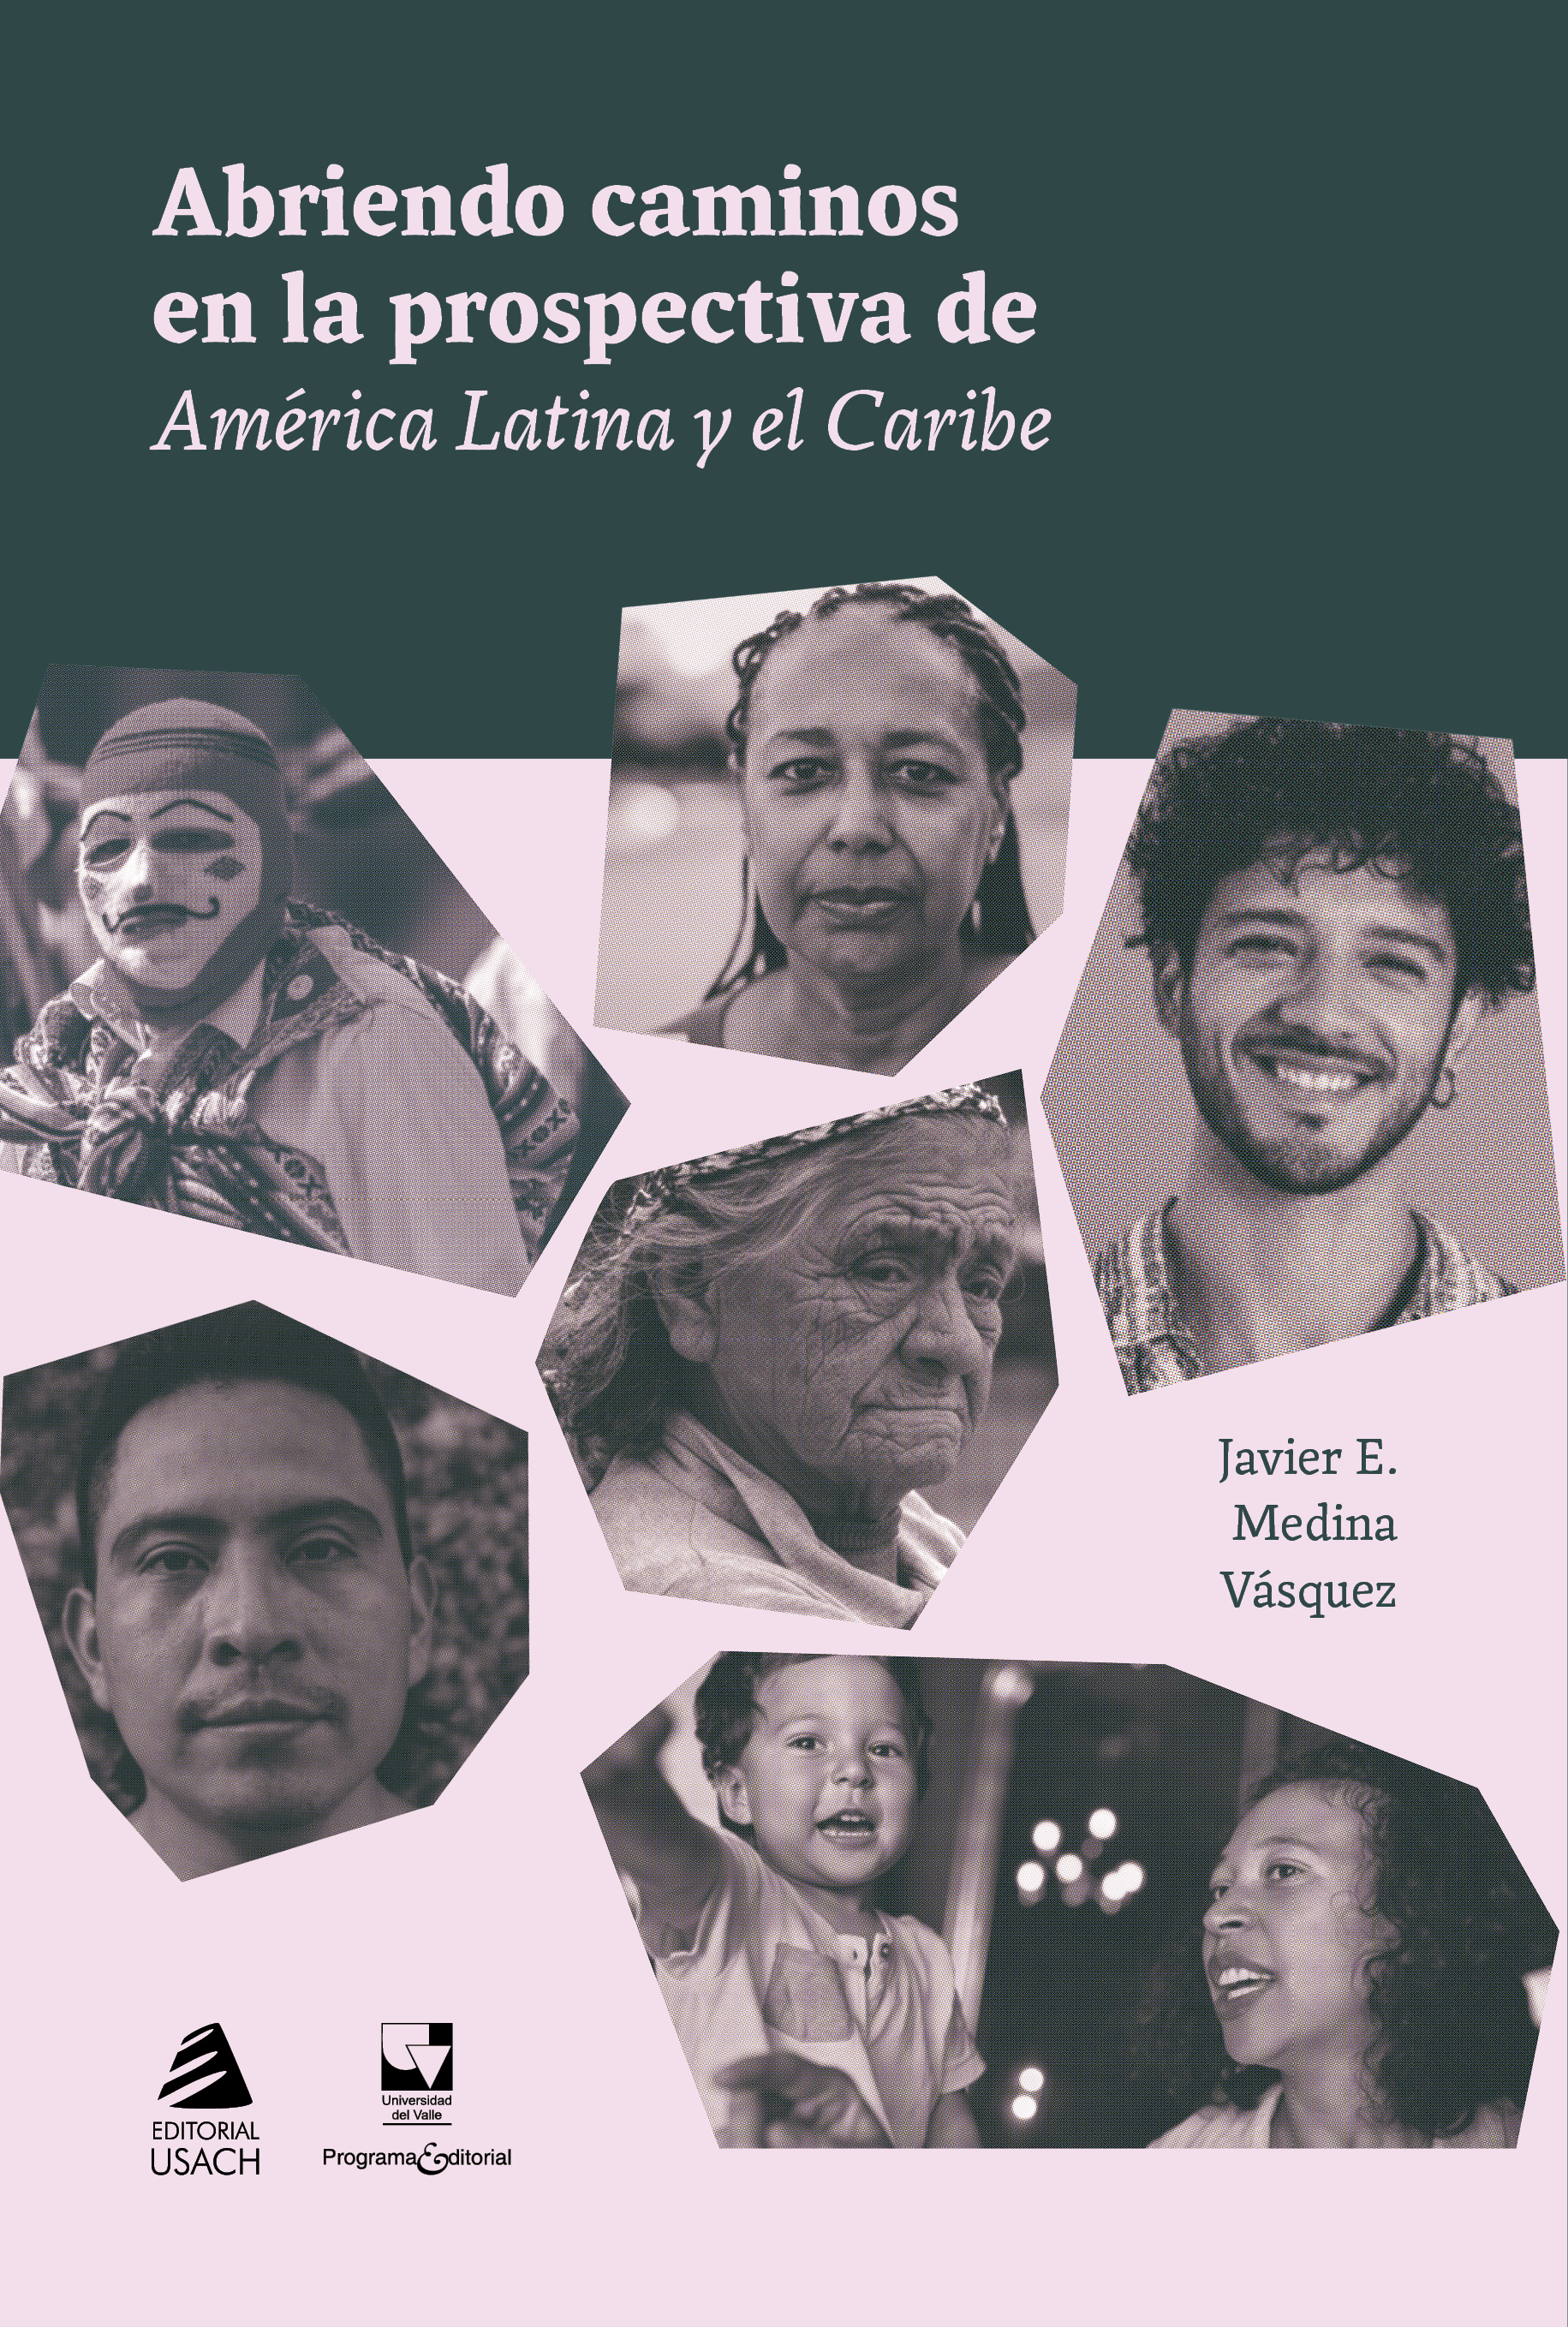 Abriendo caminos en la prospectiva de América Latina y el Caribe